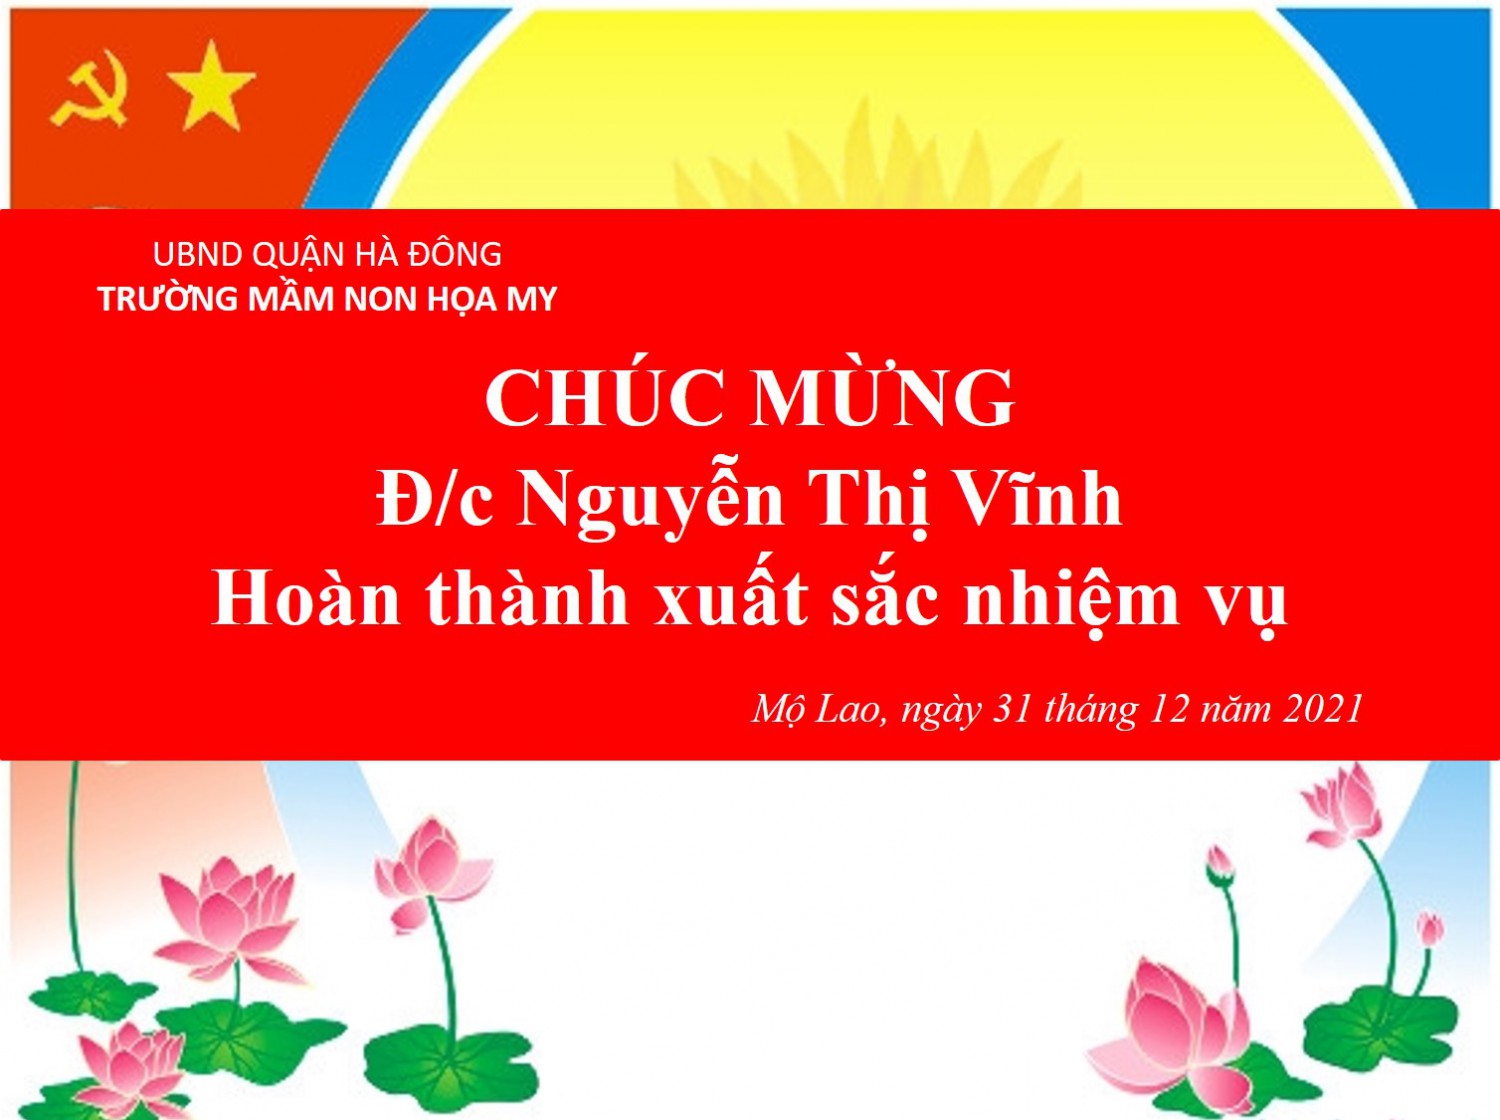 Chúc mừng cô giáo Nguyễn Thị Vĩnh hoàn thành xuất sắc nhiệm vụ.